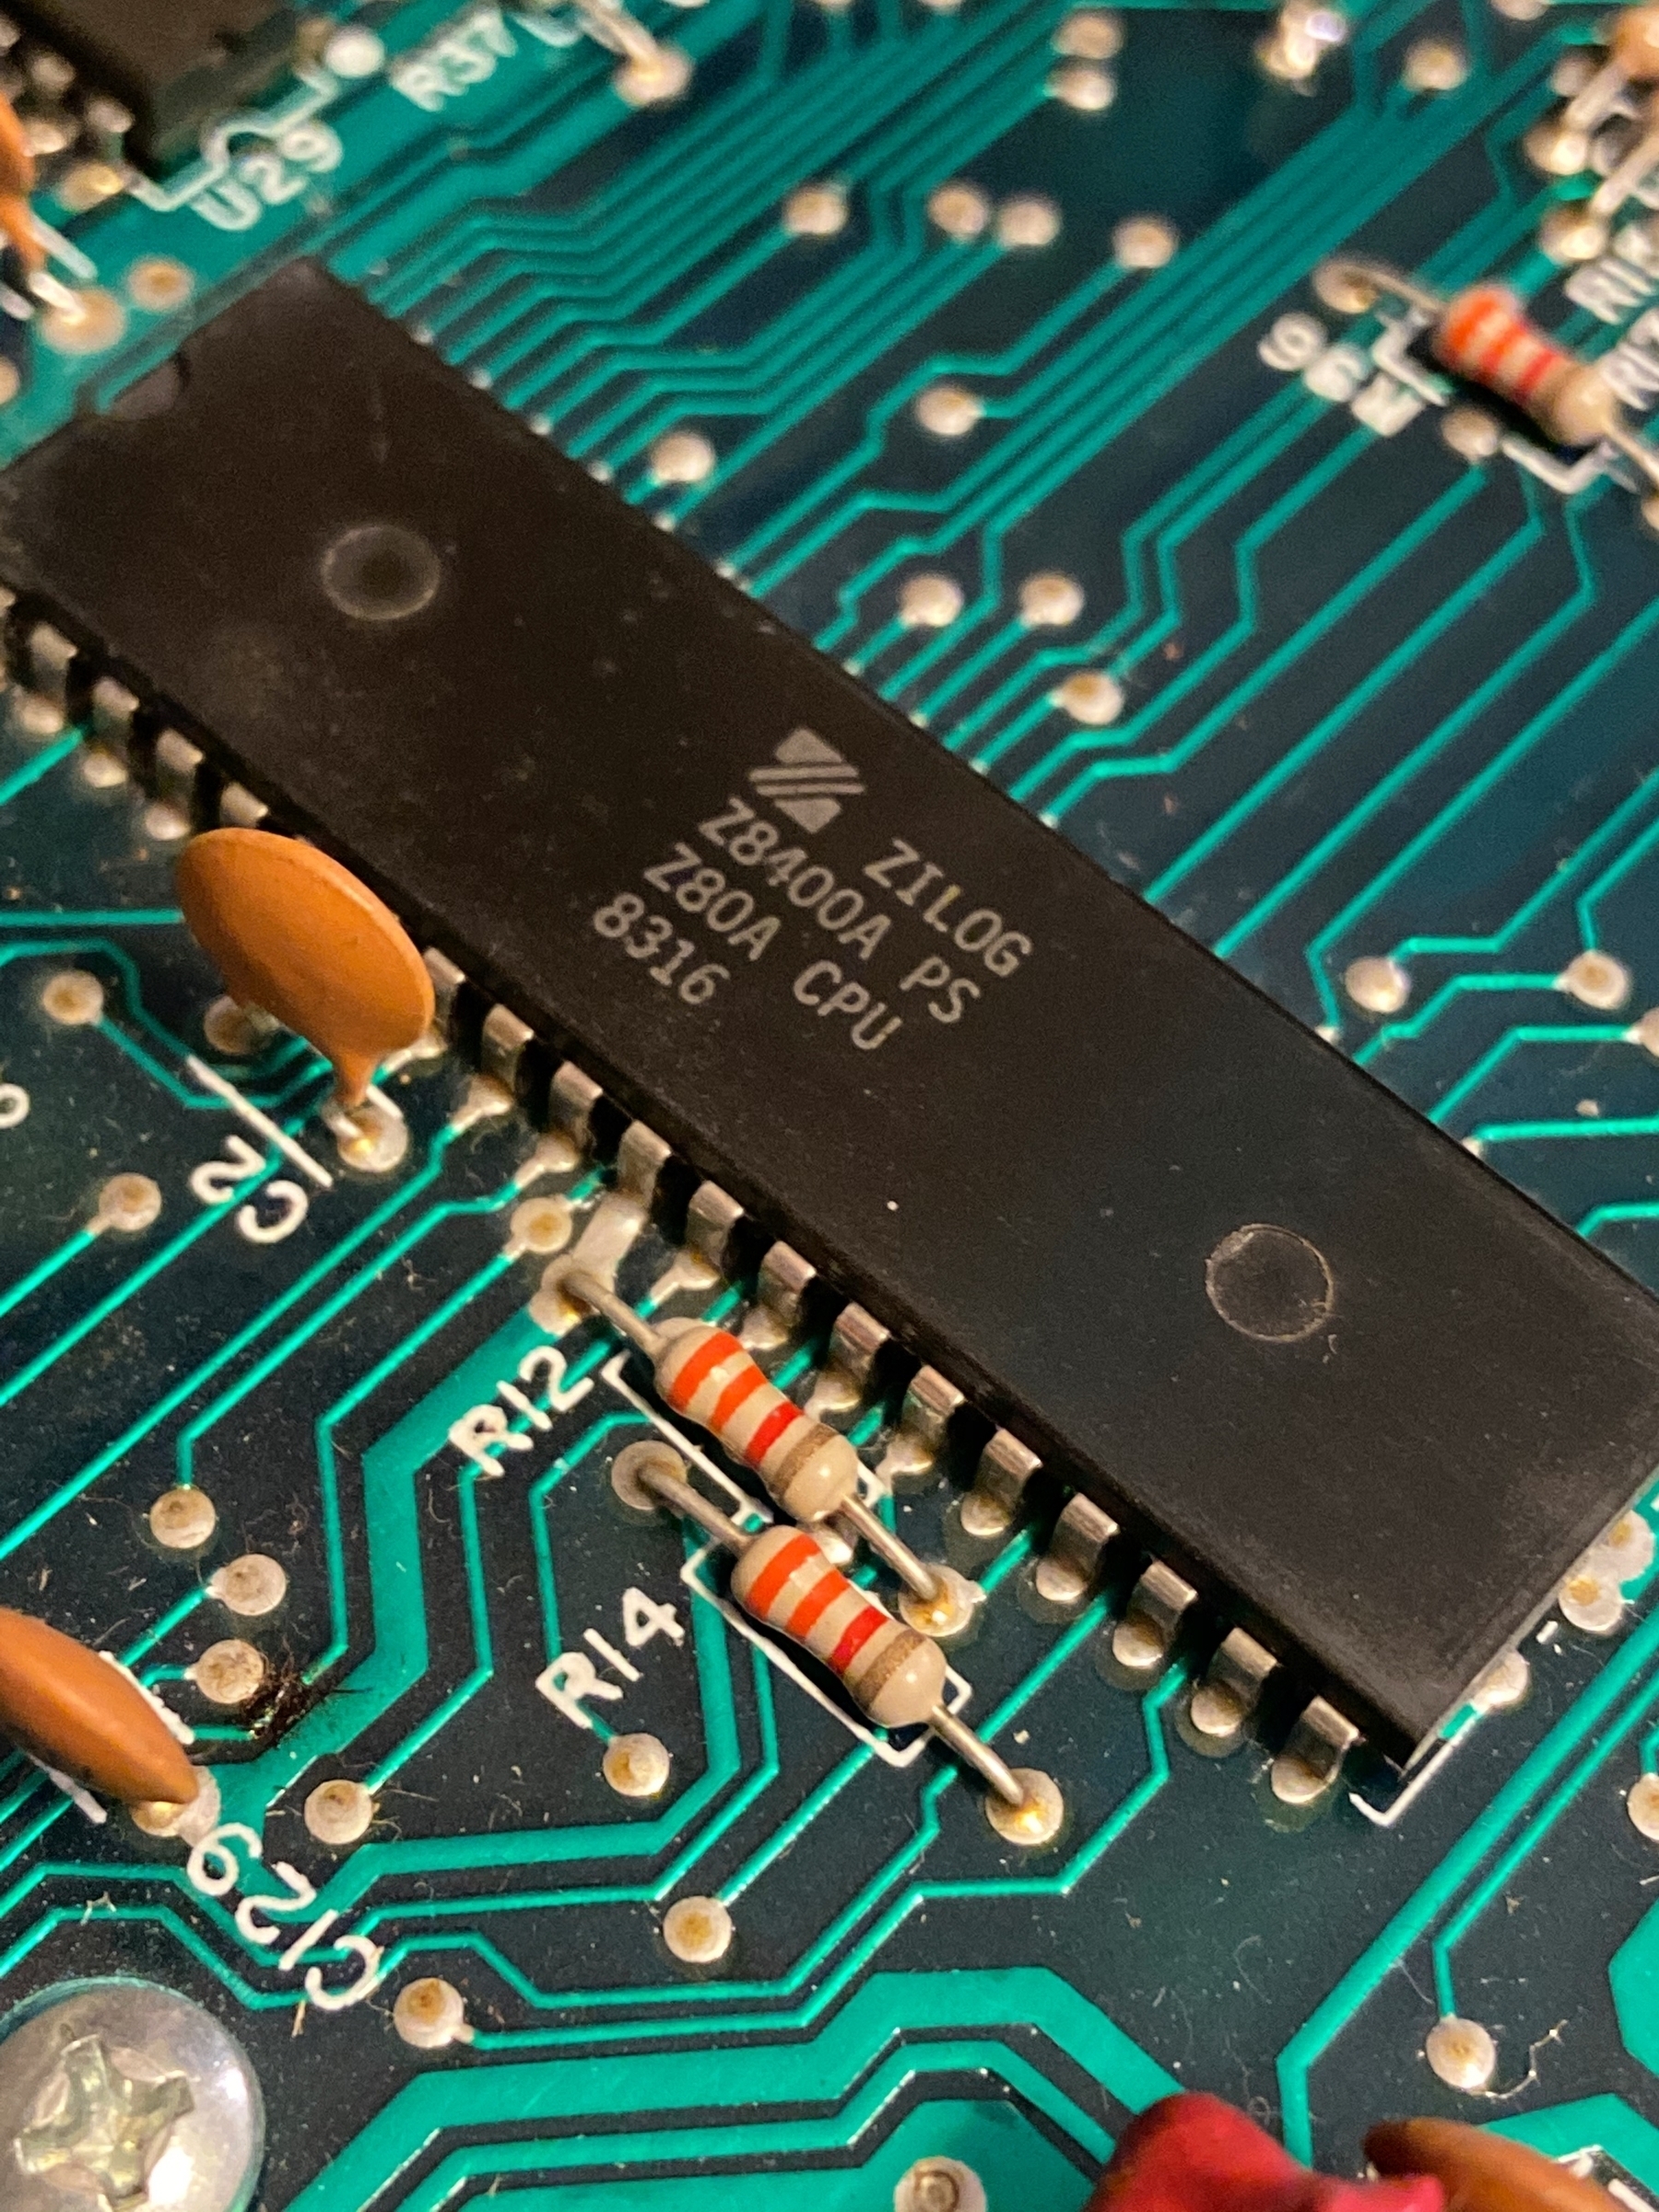 ADAM's Brain - The Z80 CPU